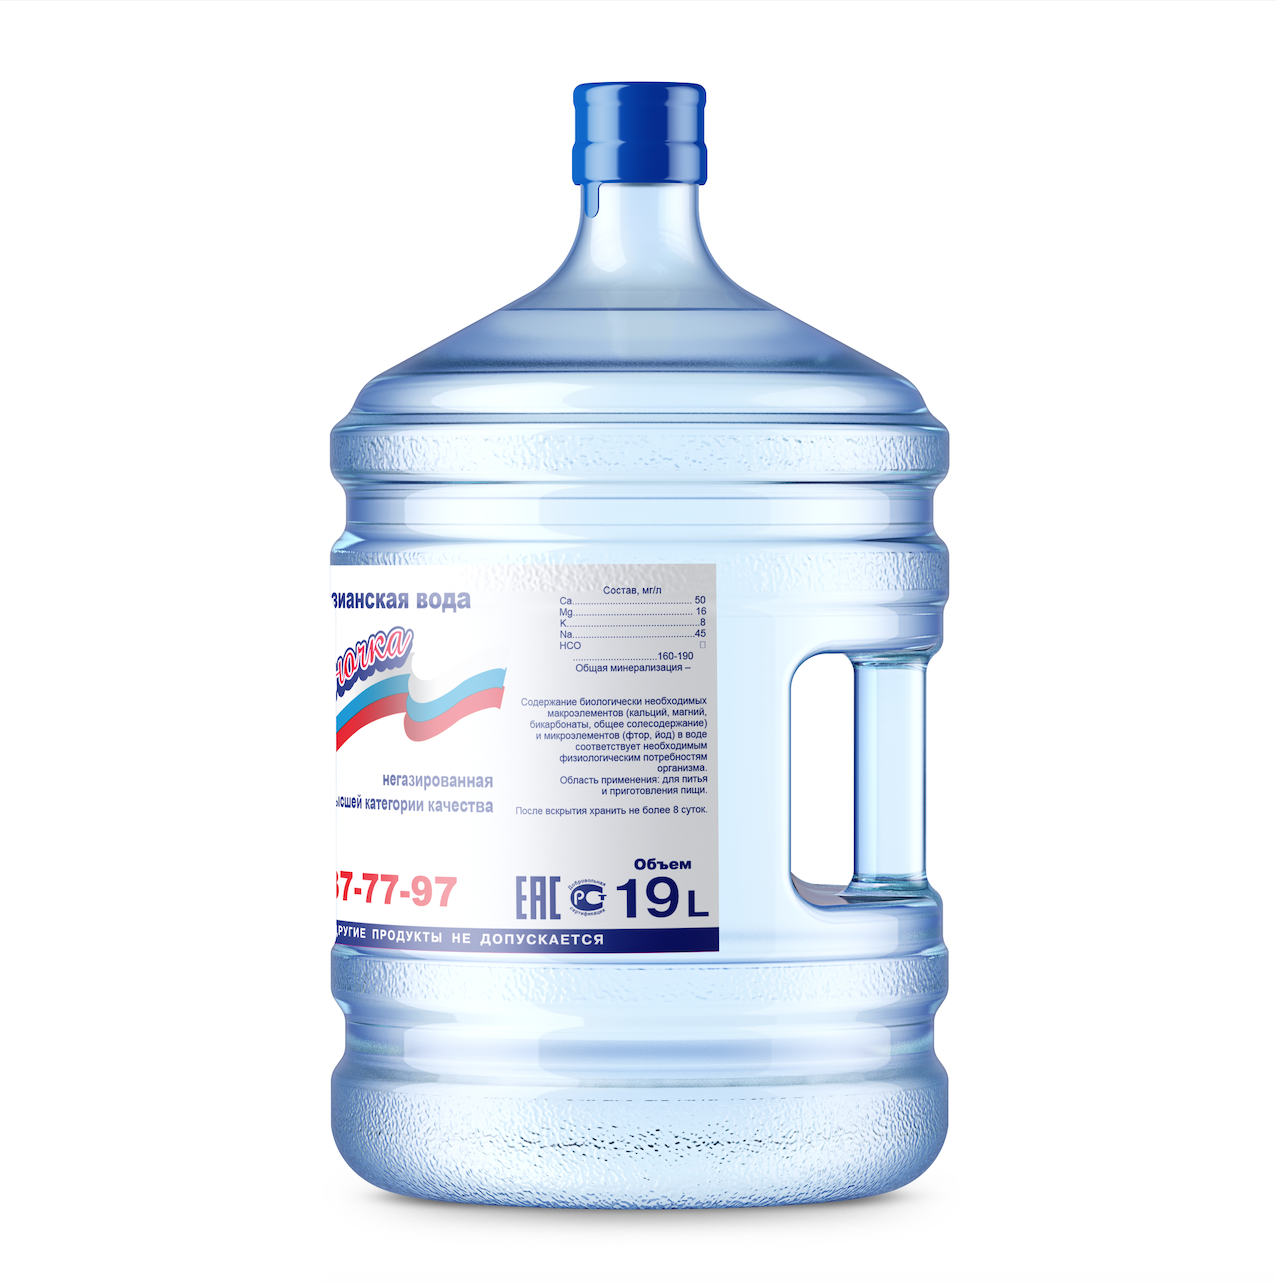 Вода питьевая 19л Подольск. Вода 19 литров. Вода питьевая Лазурная 19л. Вода "Пилигрим" 19л.